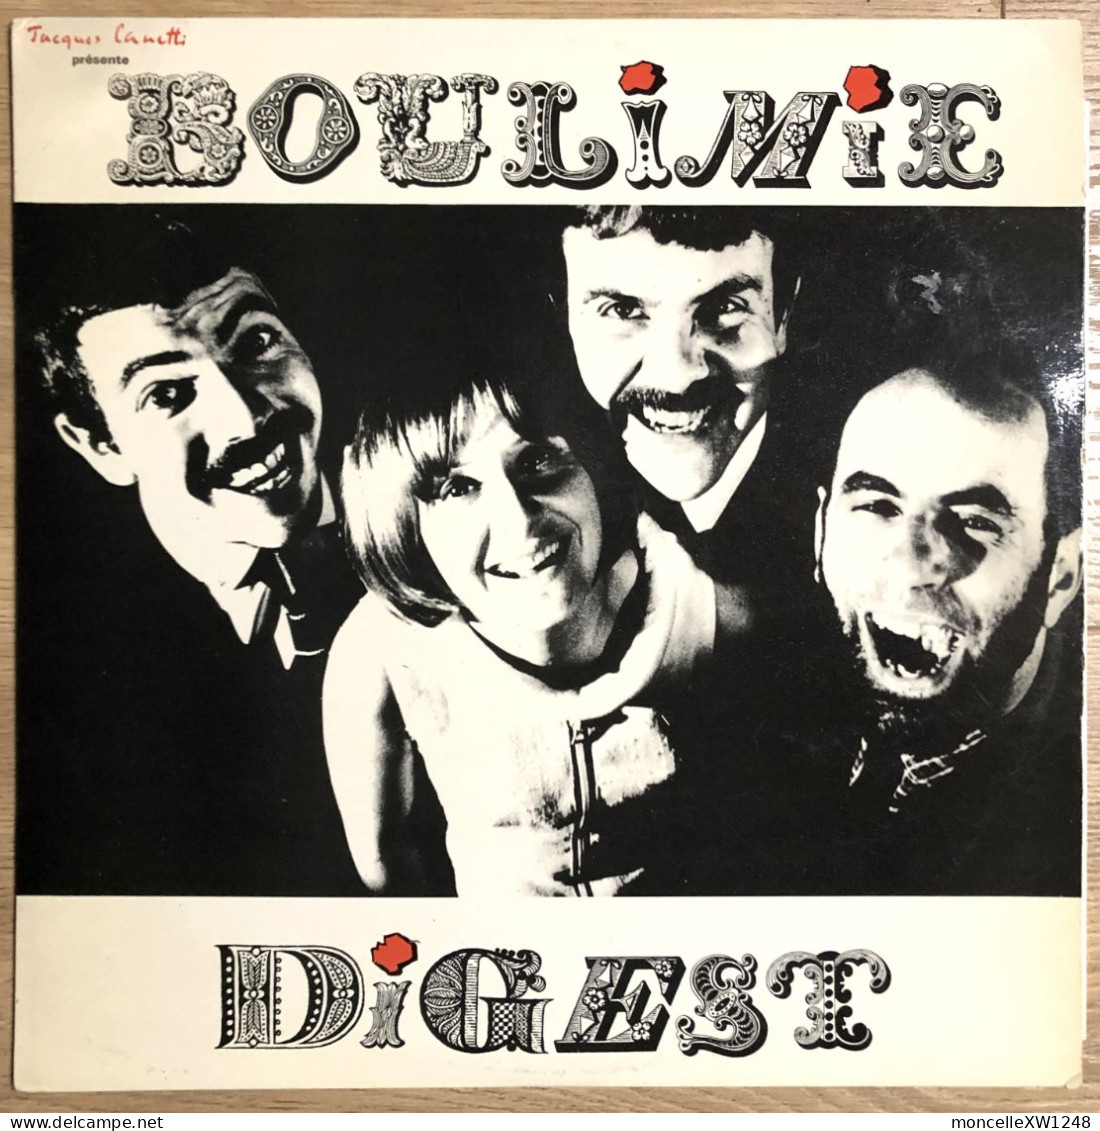 Lova Golovtschiner - 33 T LP Boulimie Digest (197?) - Humor, Cabaret